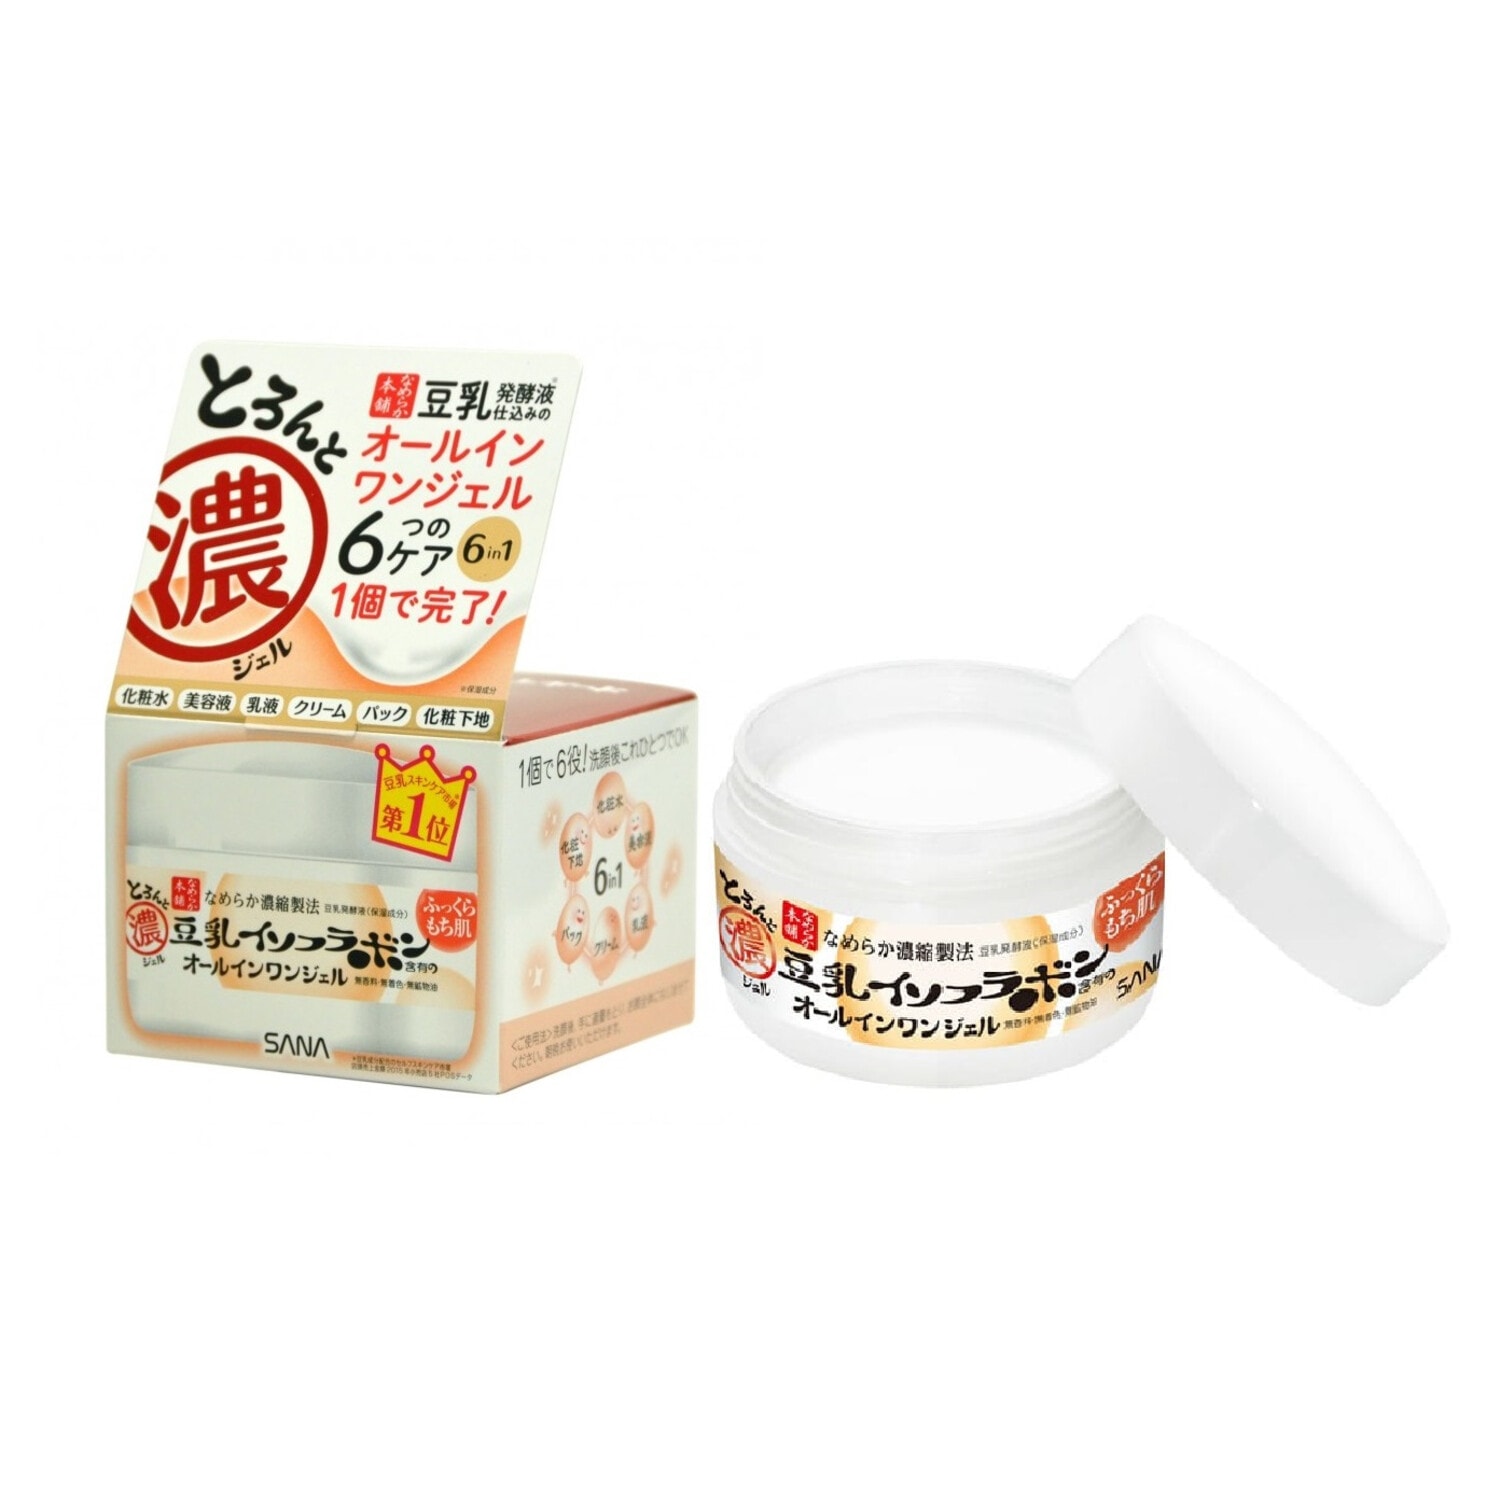 SANA Soy Milk Gel Cream Крем - гель увлажняющий с изофлавонами сои 6 в 1,100 г. / 447907 (4Т) 